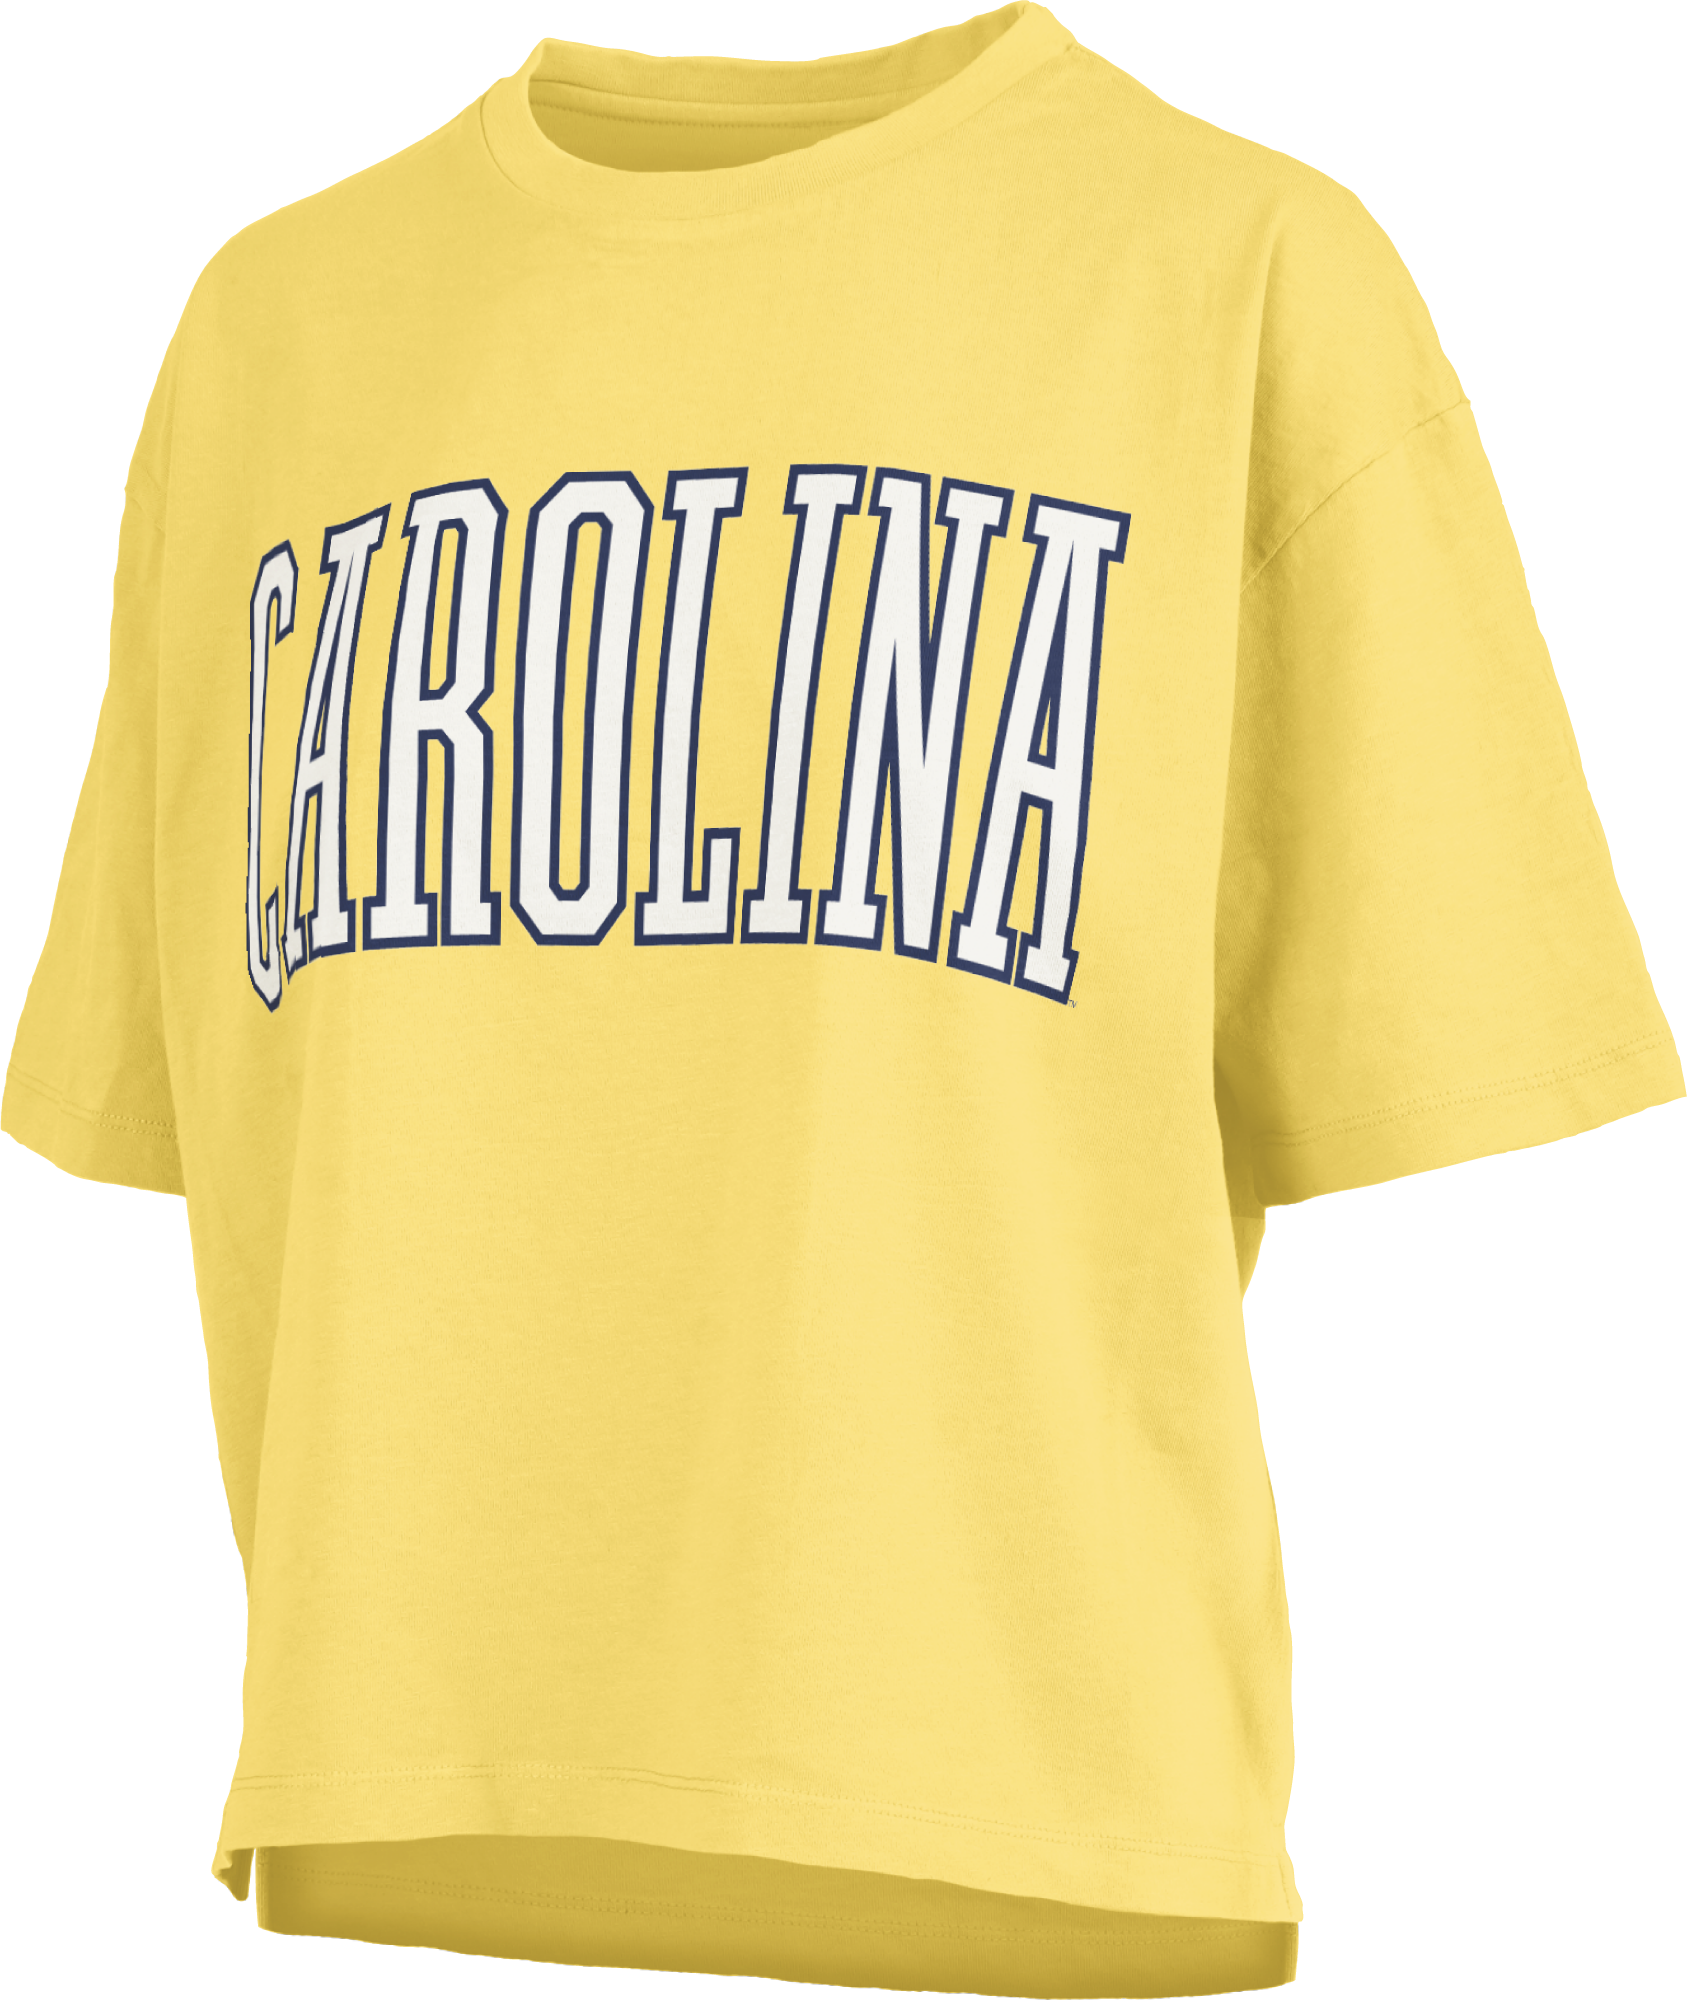 Women's Southlawn Carolina Beach T-shirt